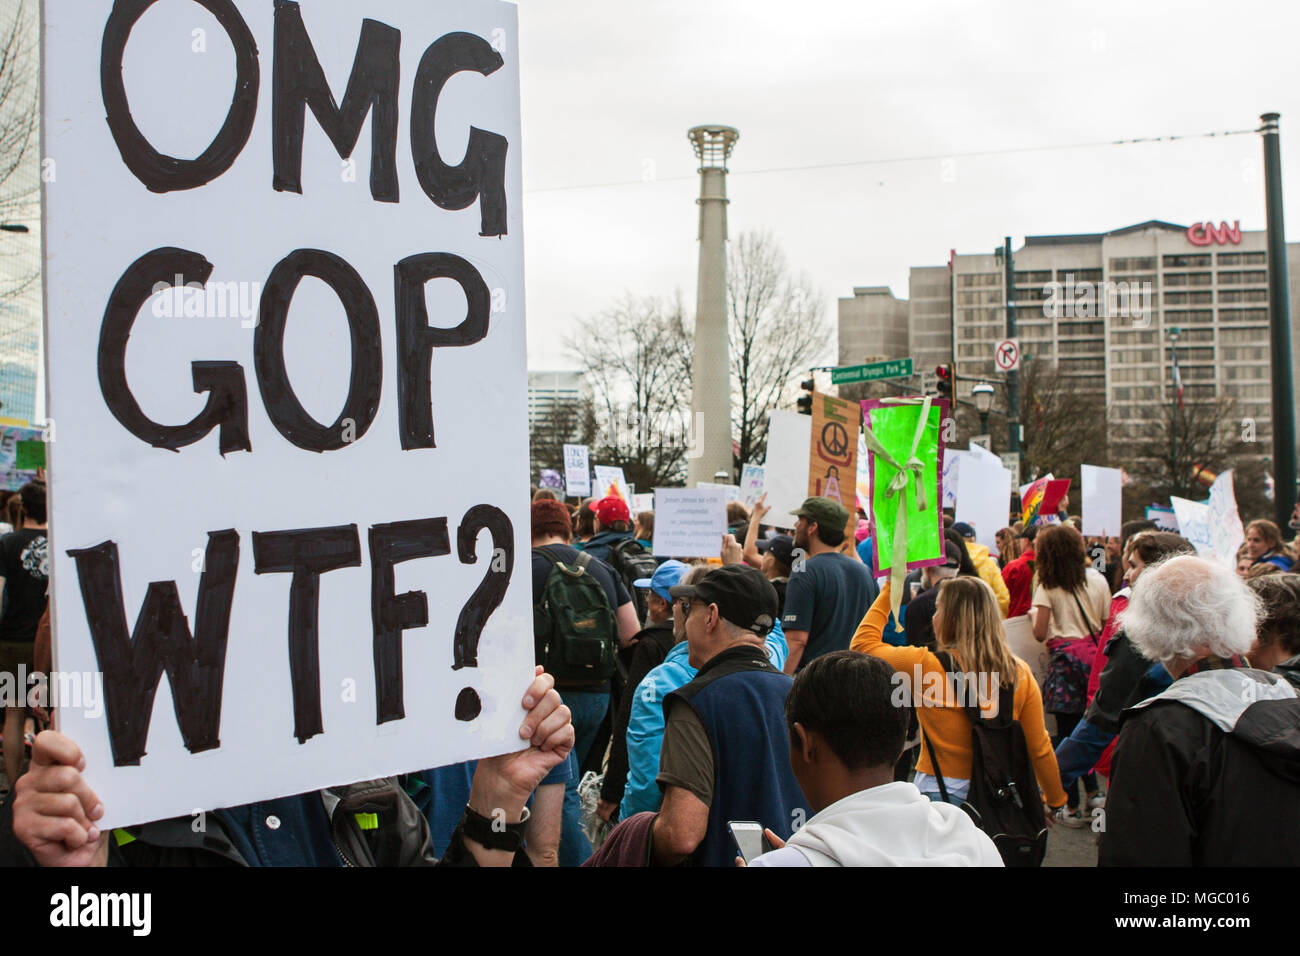 Una mujer sostiene un cartel que dice "OMG, GOP, WTF?' como pasar por miles de manifestantes en la marcha de las mujeres el 21 de enero de 2016 en Atlanta, GA. Foto de stock